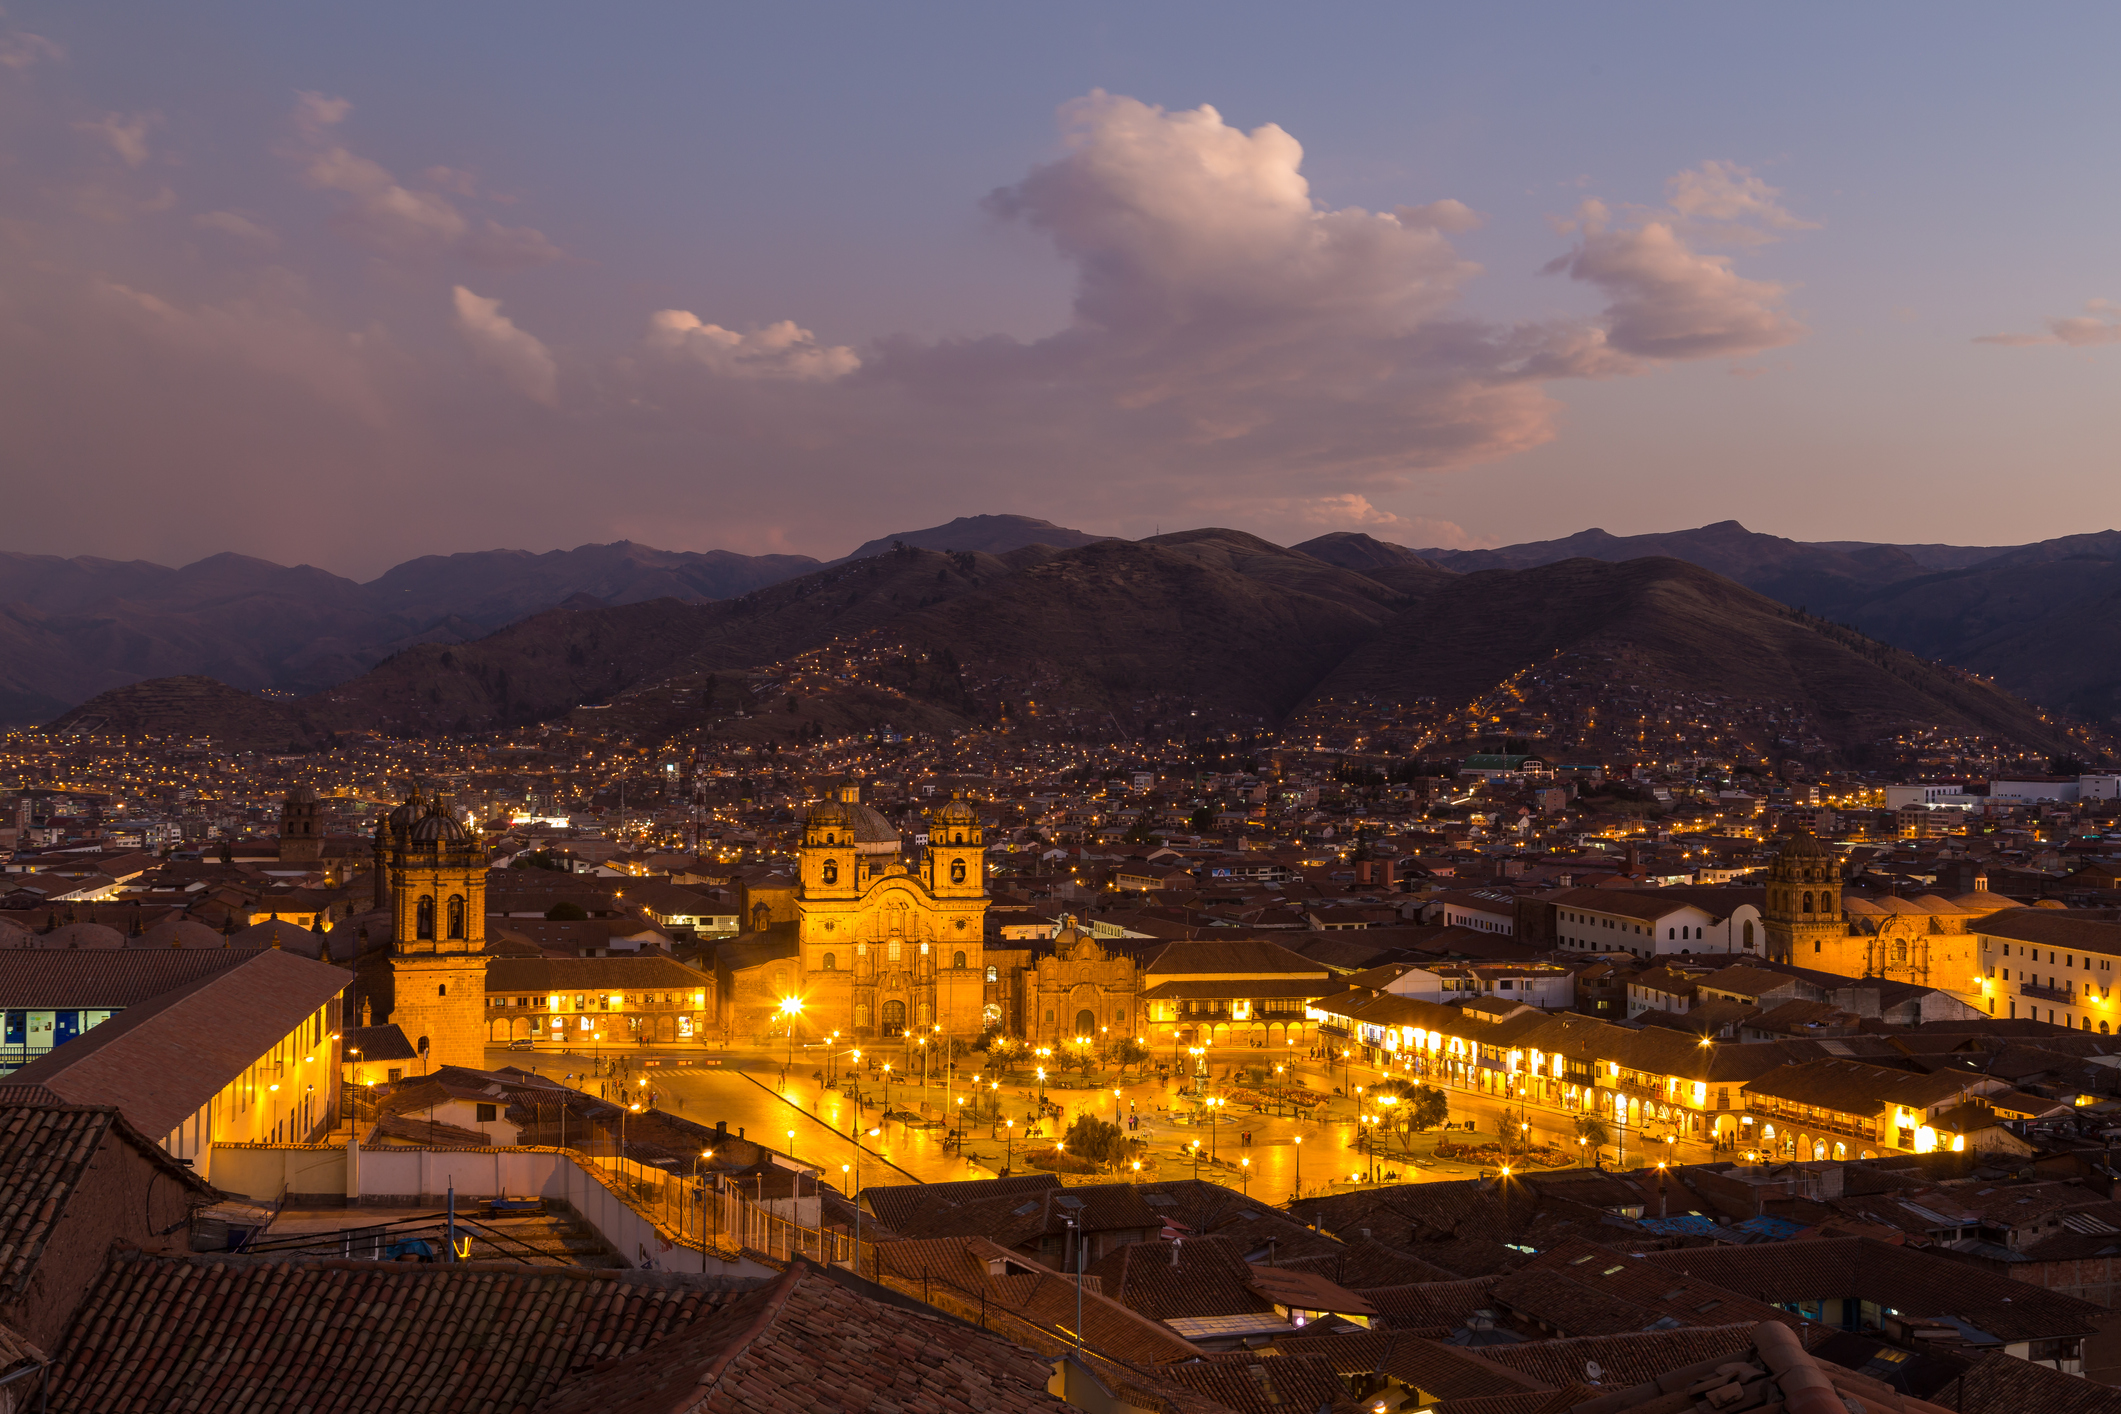 كوسكو، بيرو - 08 أكتوبر 2015: منظر بانورامي لبلازا دي أرماس في كوسكو عند غروب الشمس